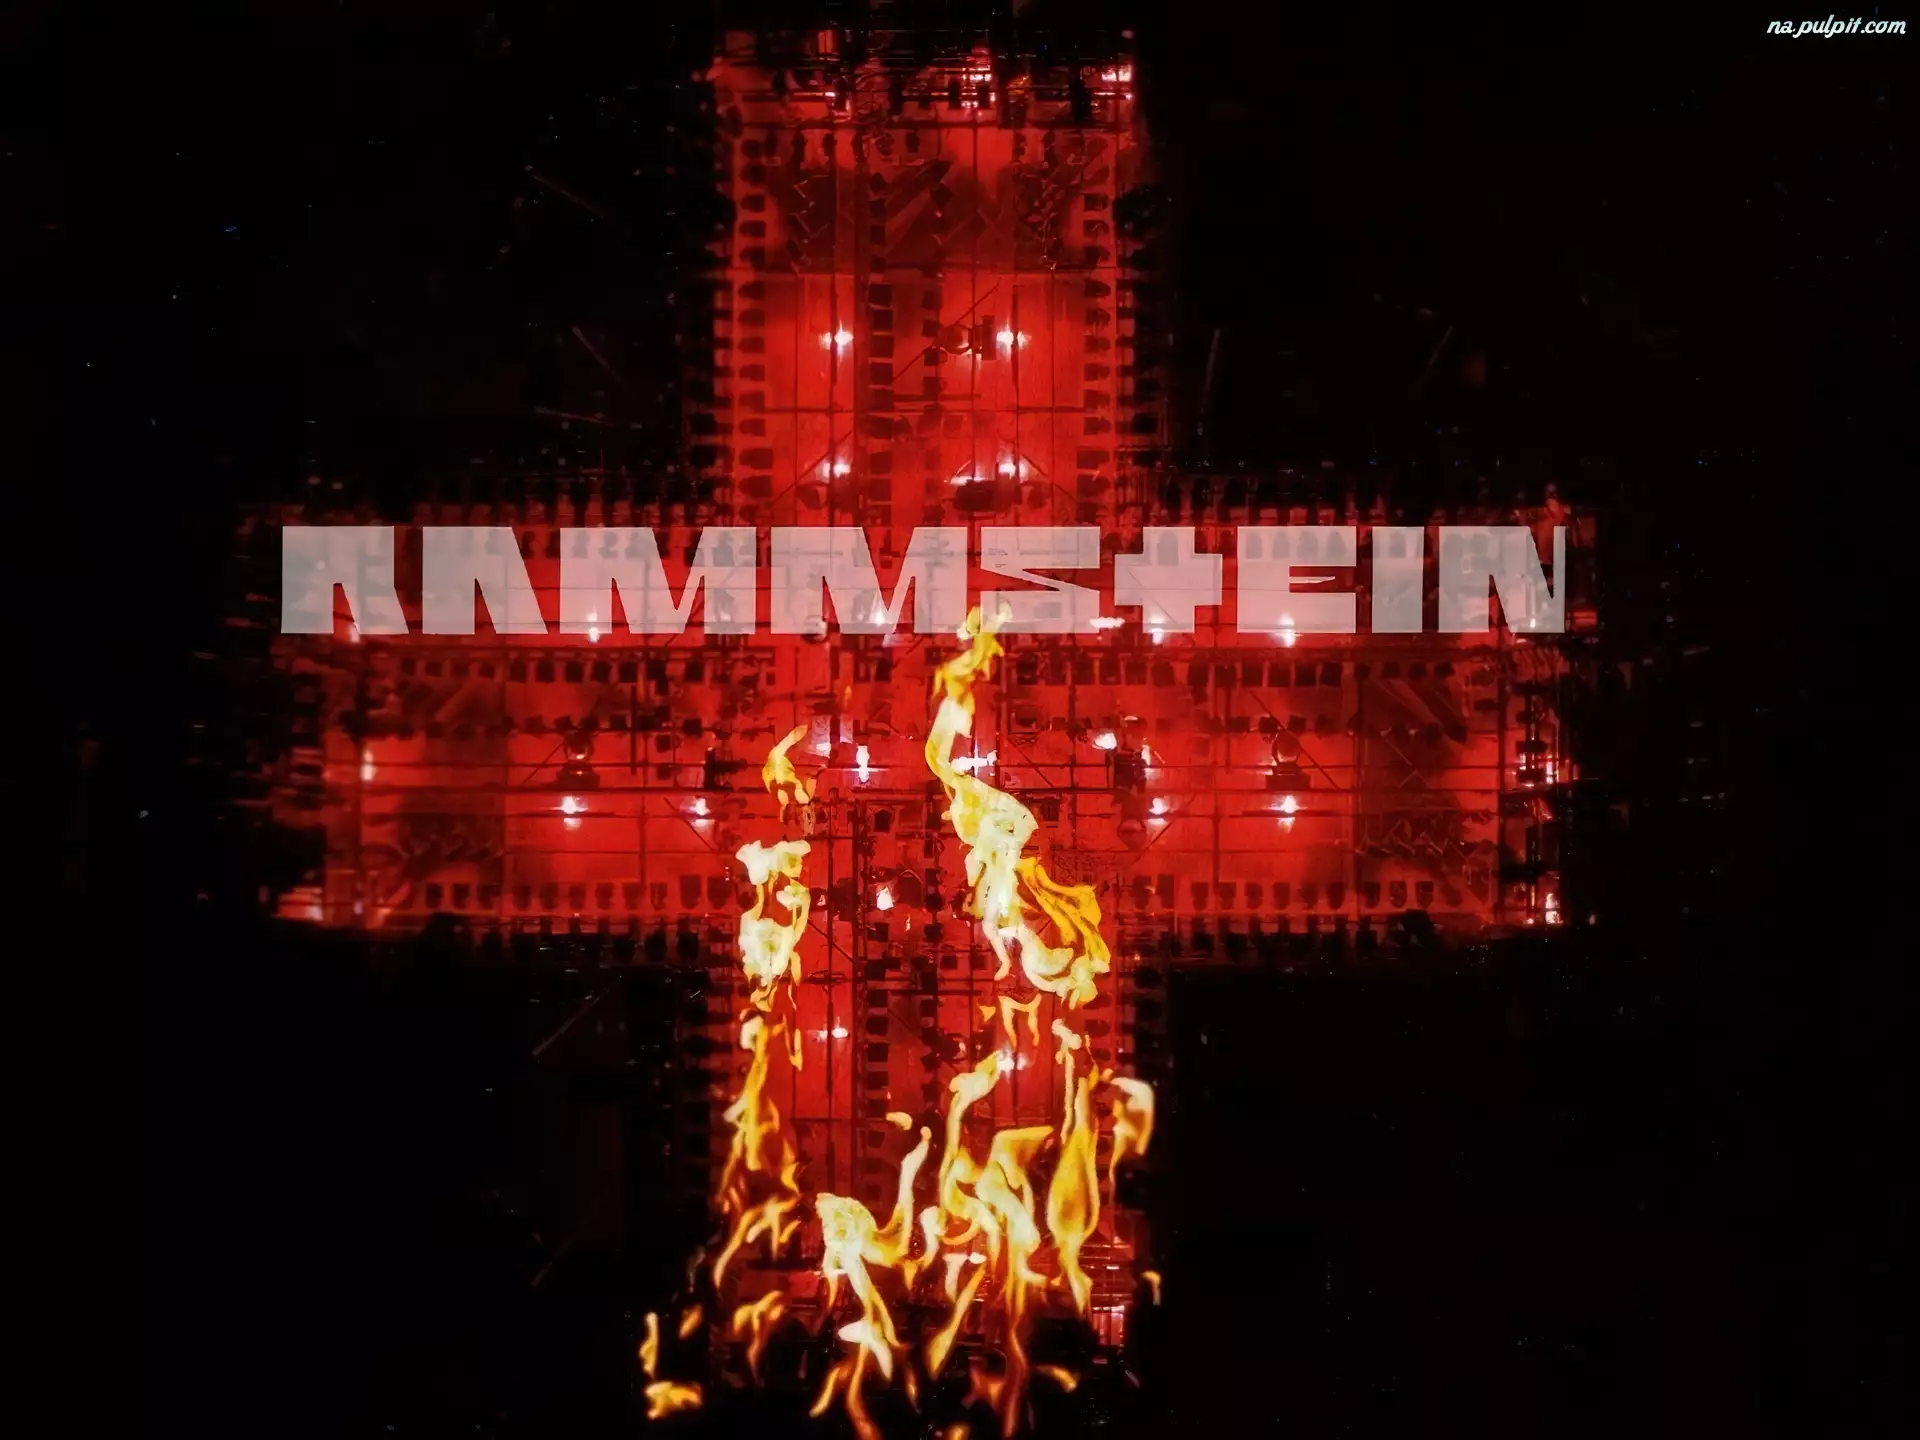 płomień, Rammstein, krzyż